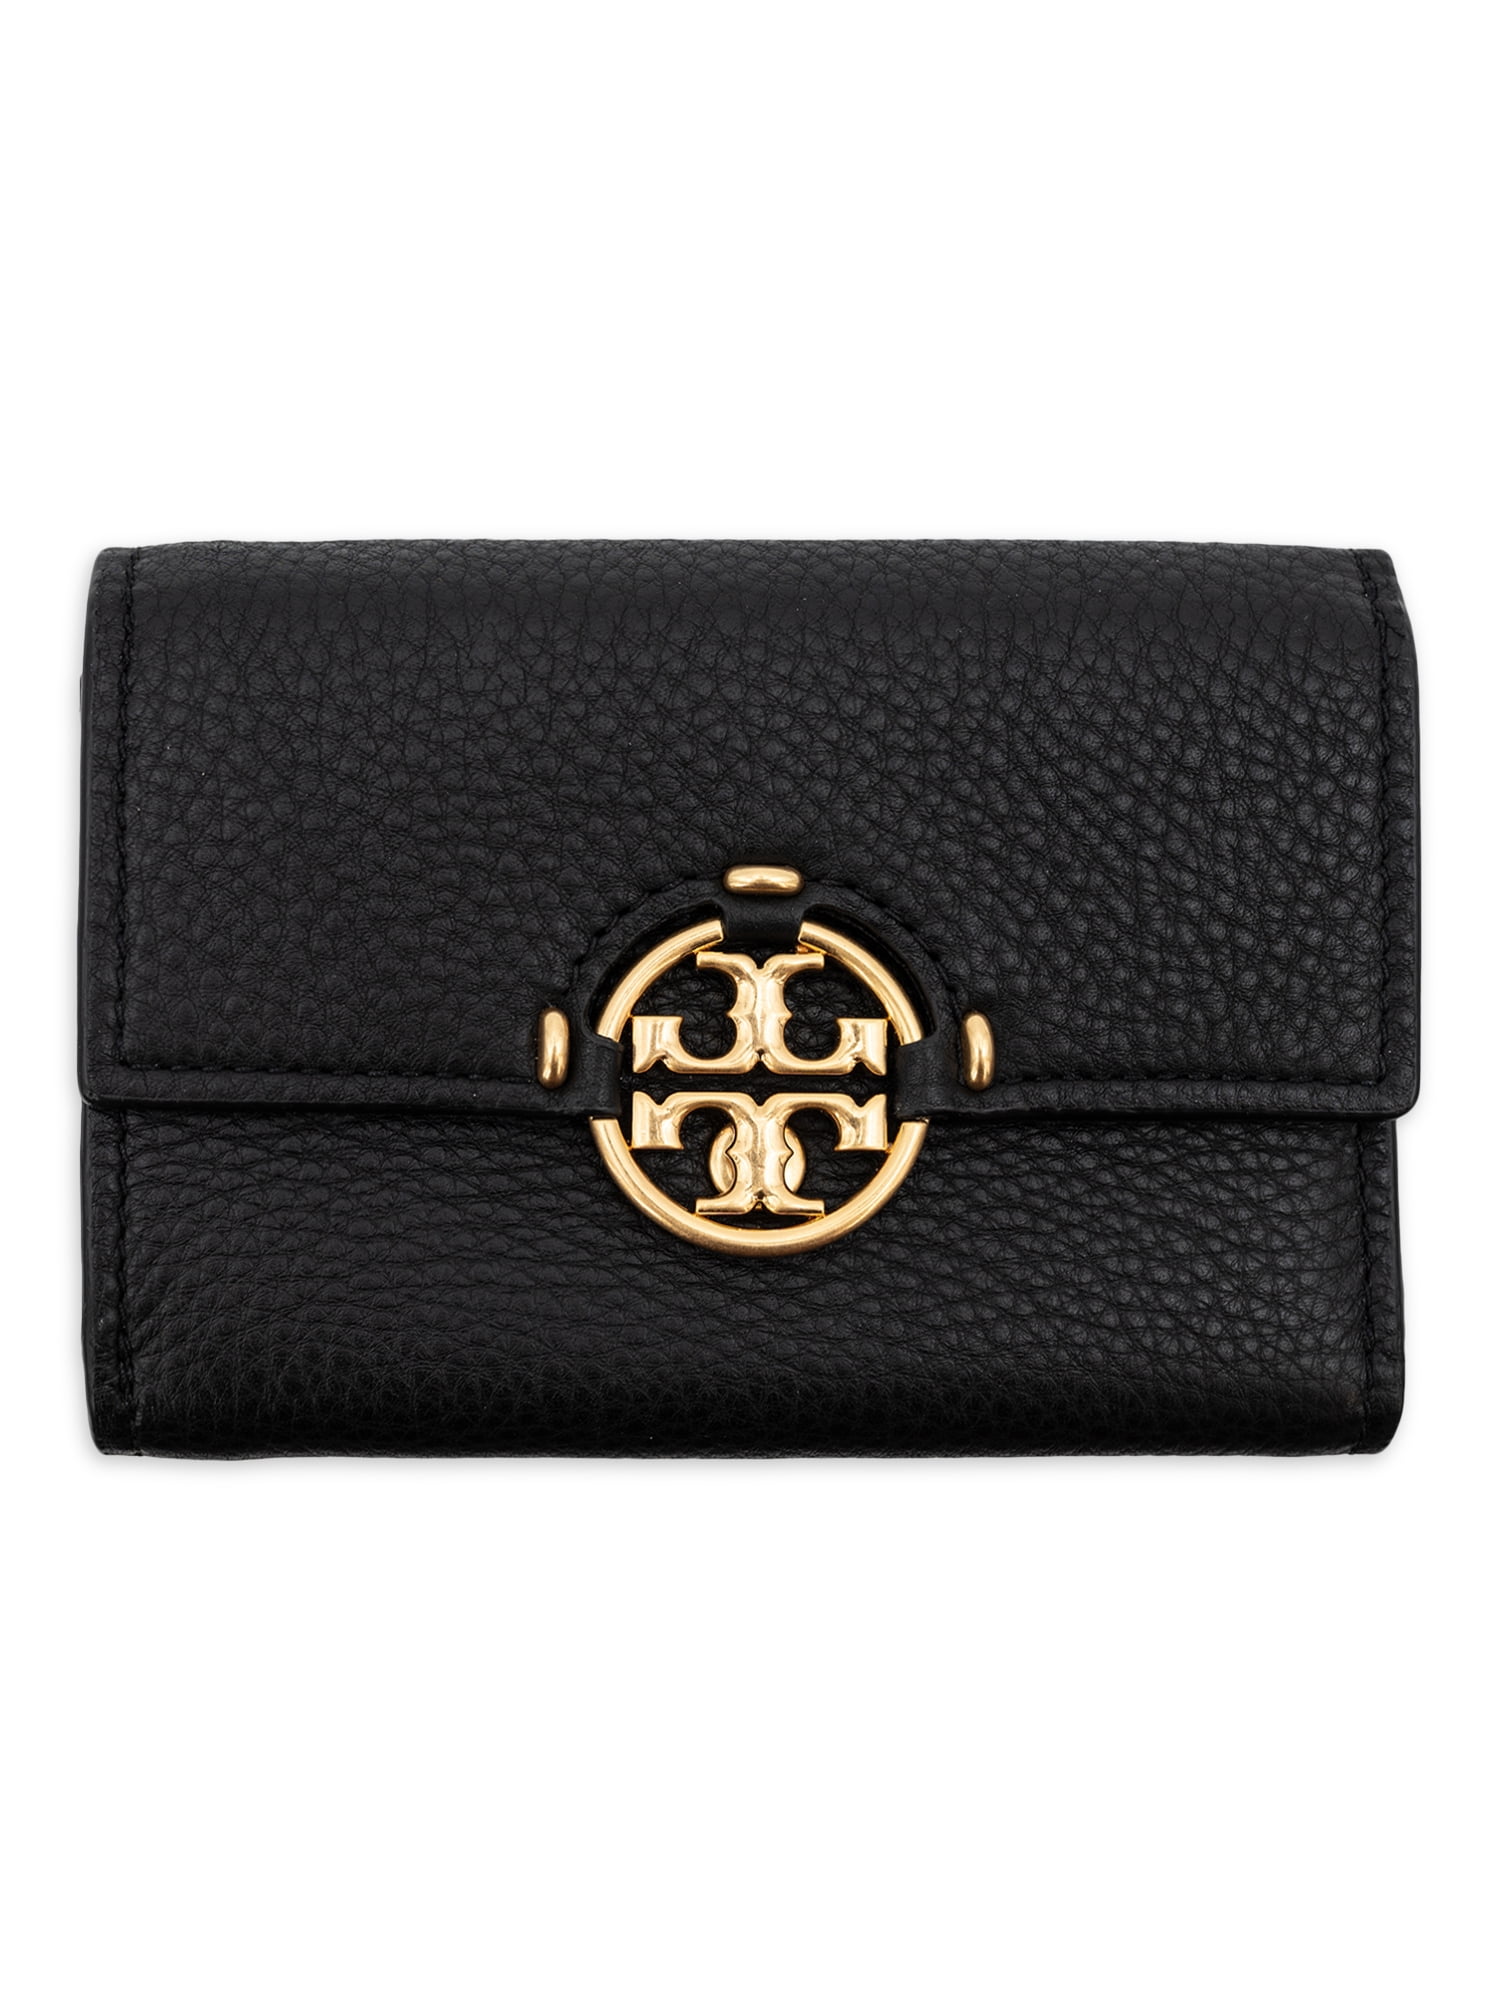 Tory Burch Women's Miller Medium Flap Wallet - Black 